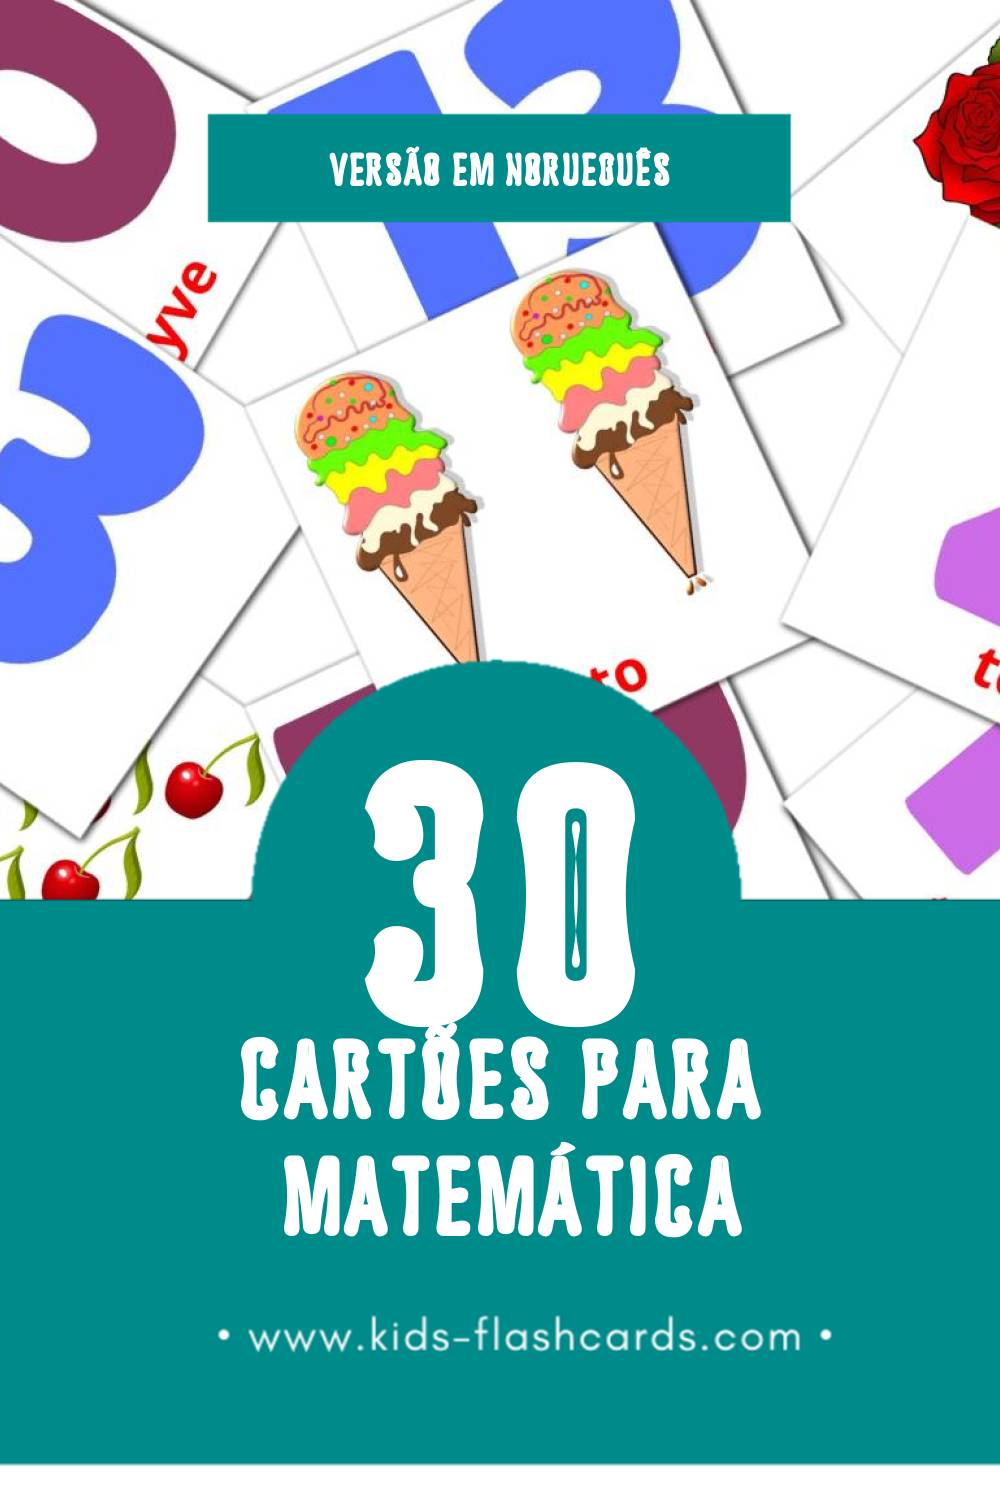 Flashcards de Matematikk Visuais para Toddlers (30 cartões em Norueguês)